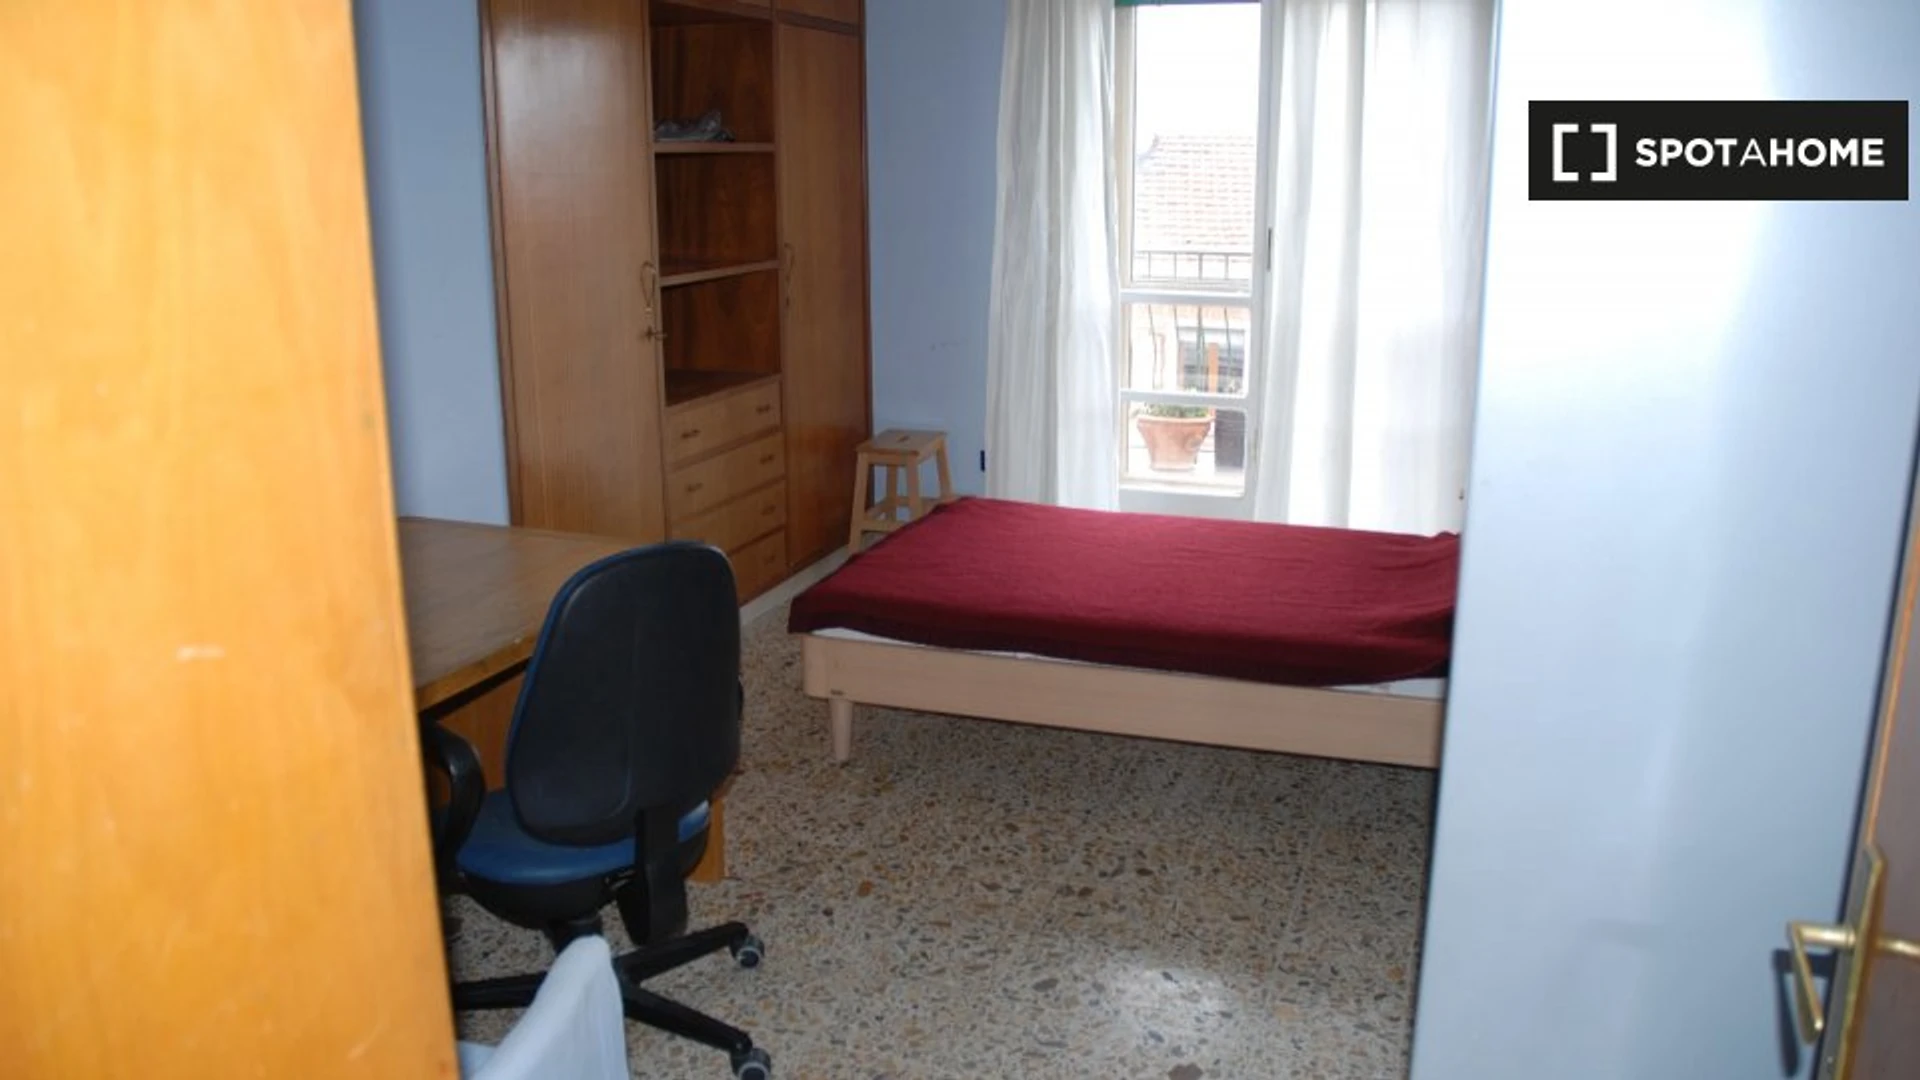 Alquiler de habitaciones por meses en Perugia